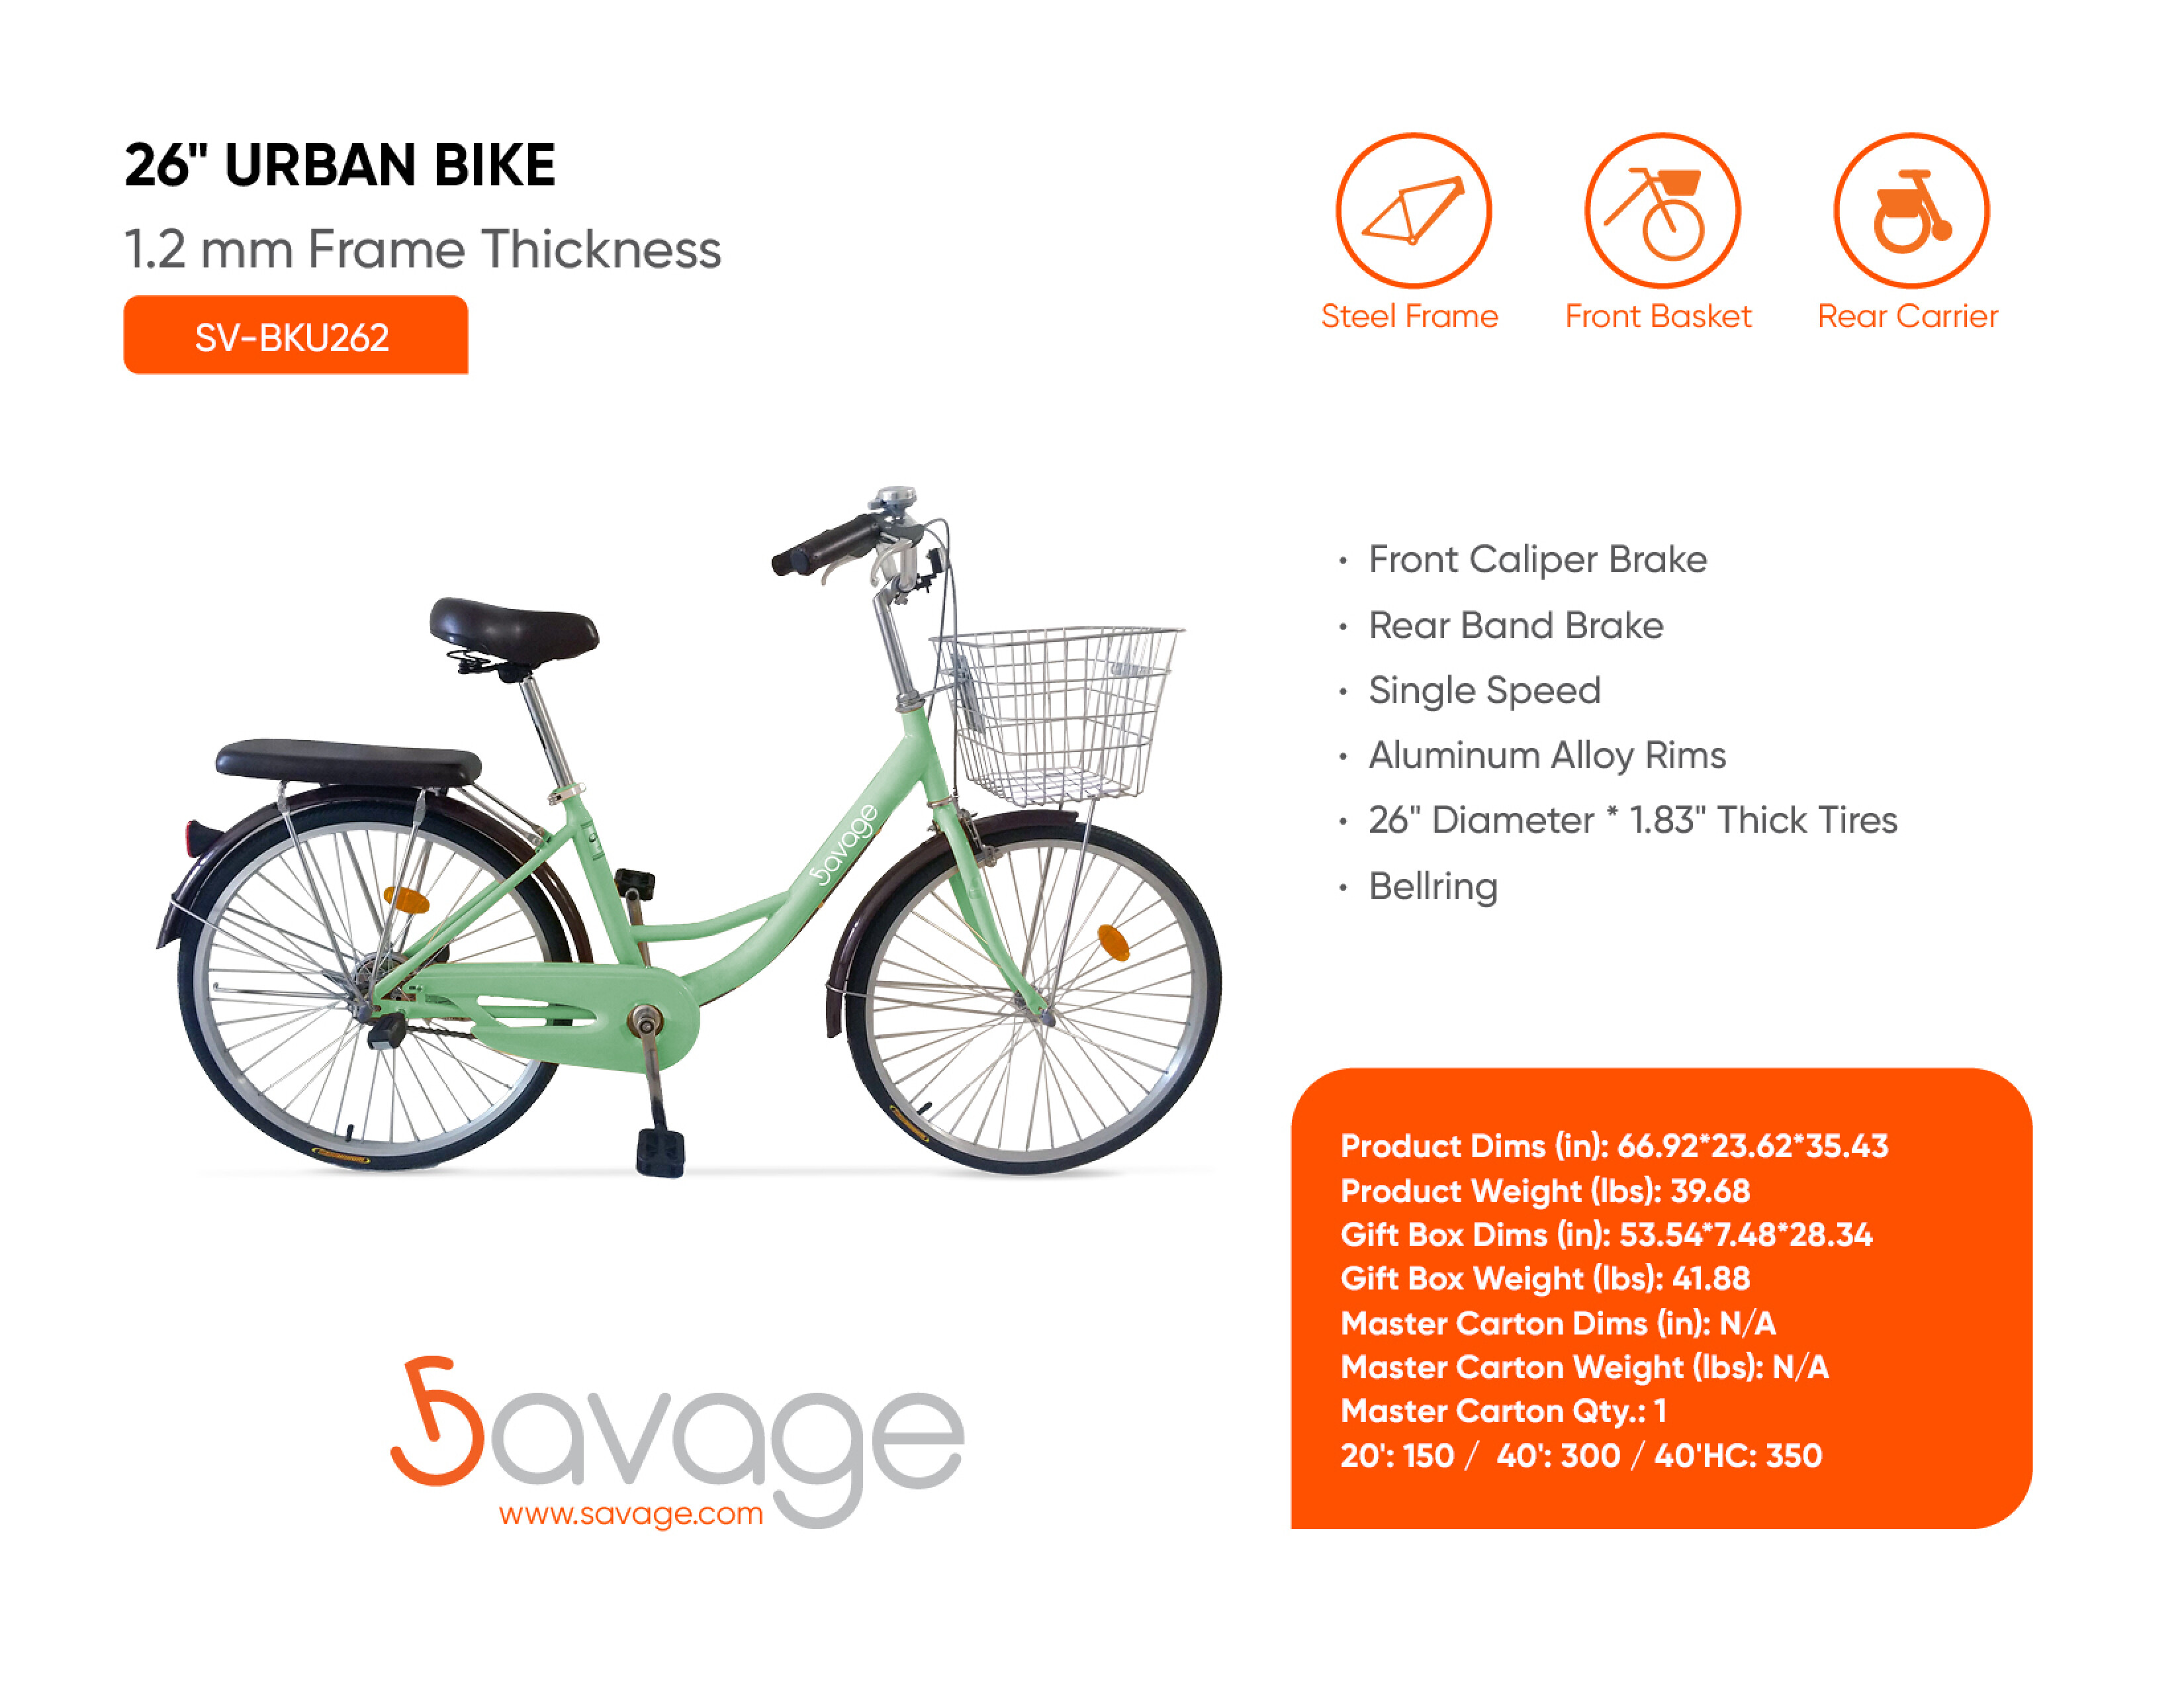 26" Urban Bike